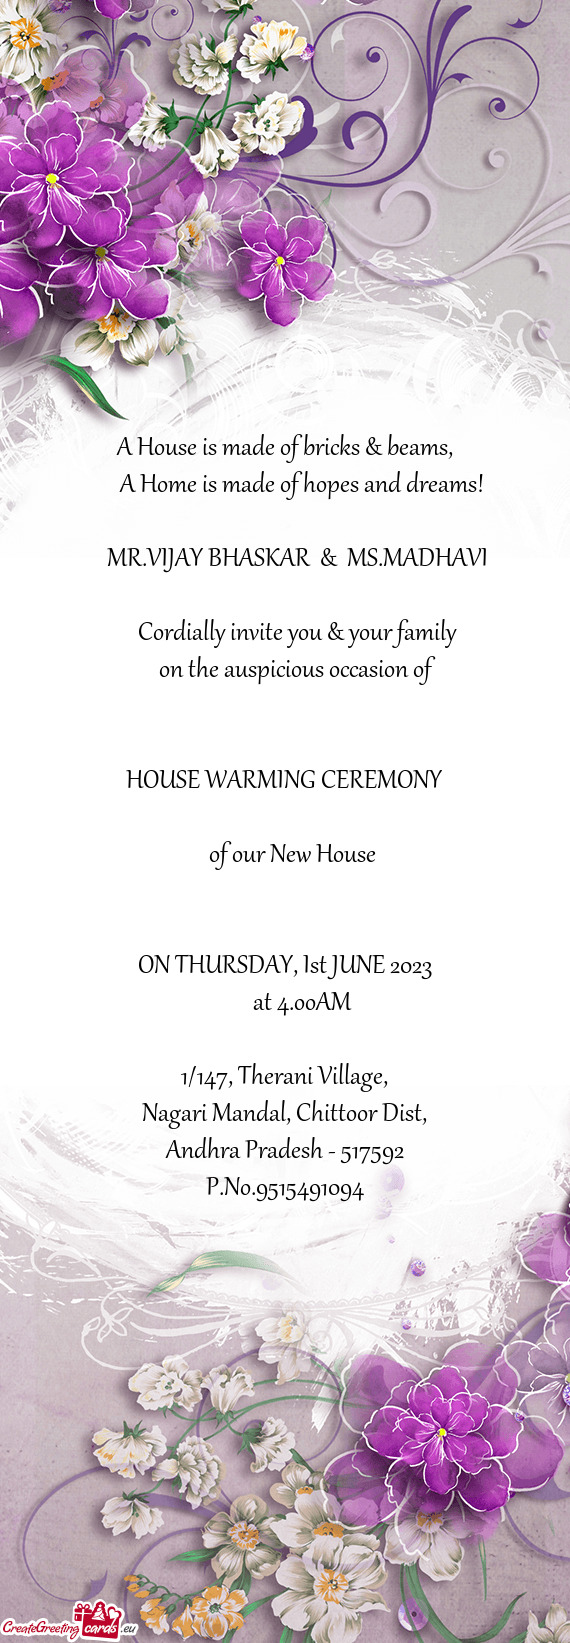 MR.VIJAY BHASKAR & MS.MADHAVI